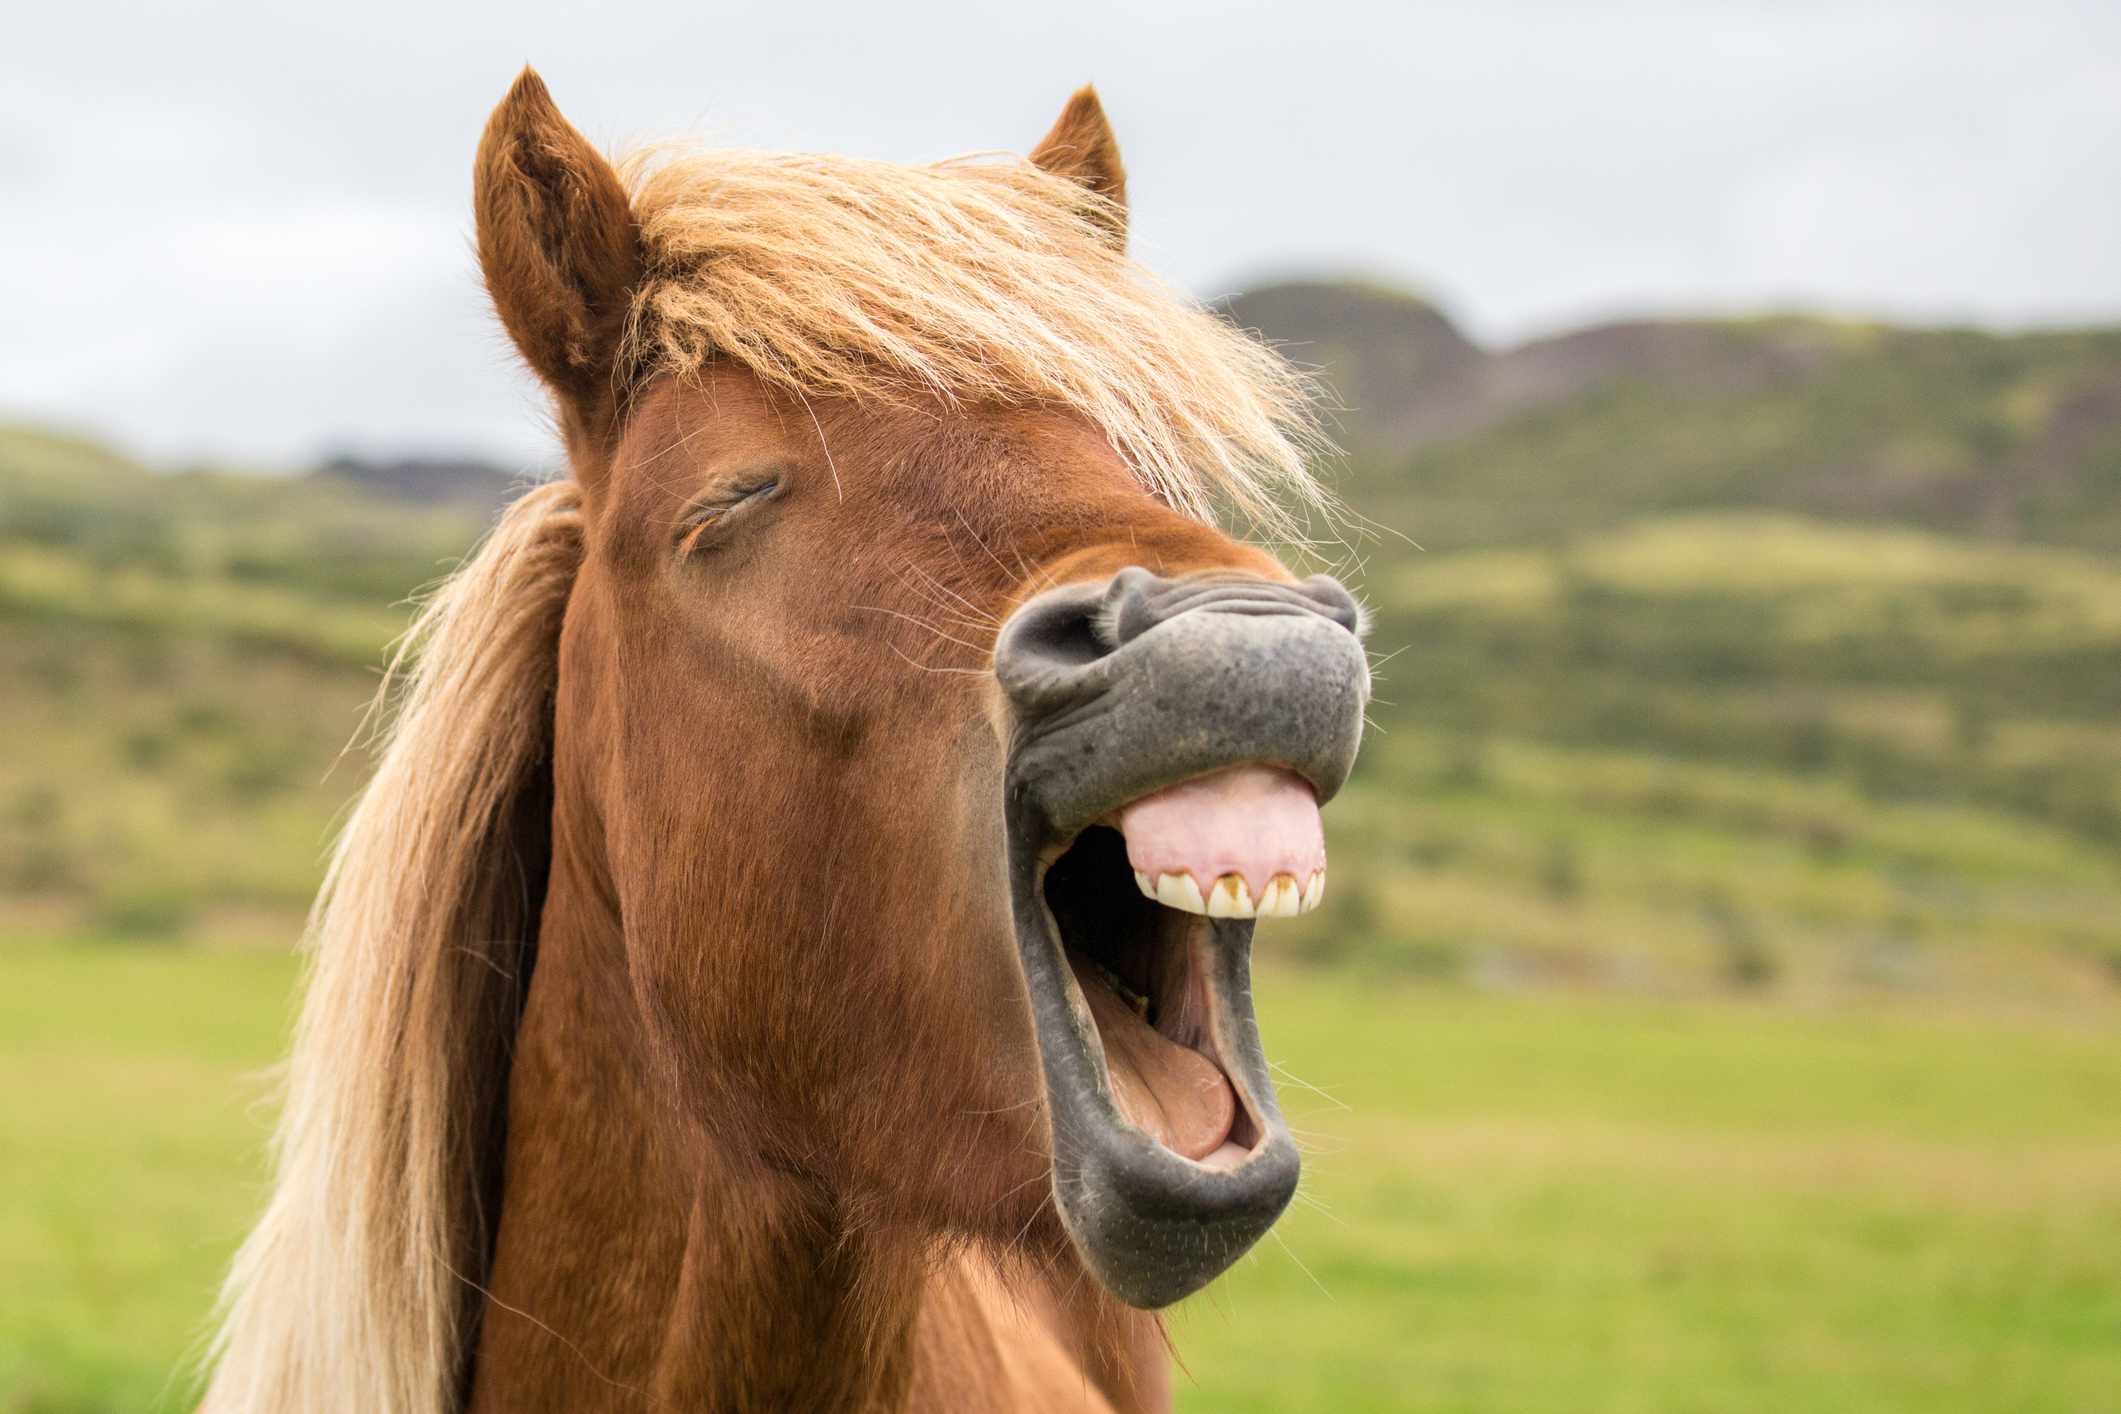 primer plano de la cara de un caballo con la boca abierta mostrando sus pequeños dientes